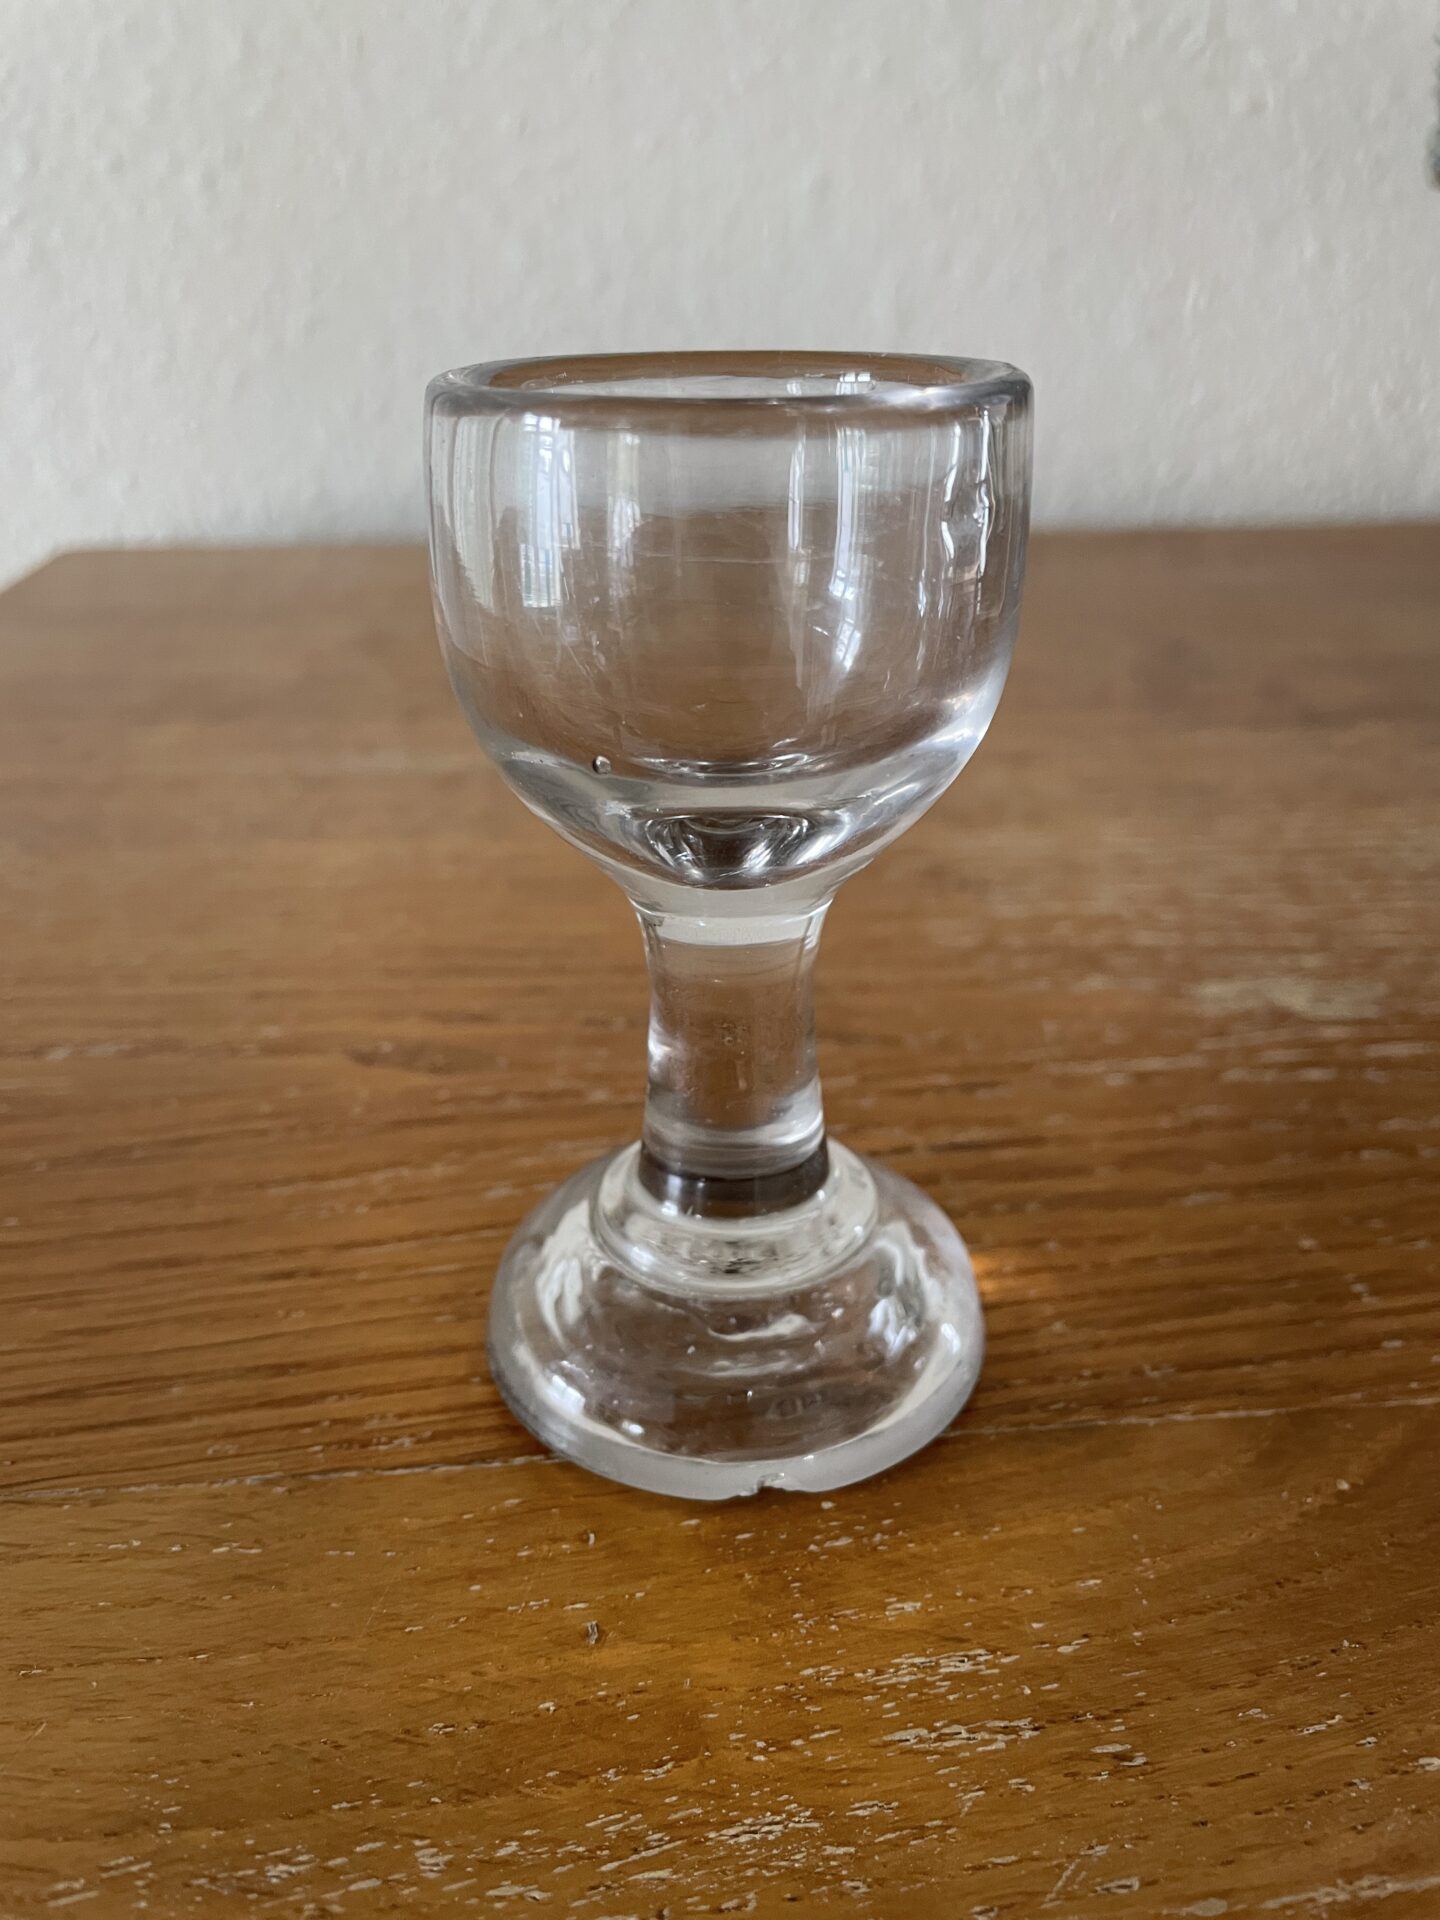 Jernbaneglas fra 1800-tallet, Aalborg eller Fyens glasværk, h= 9 cm, pris 300kr